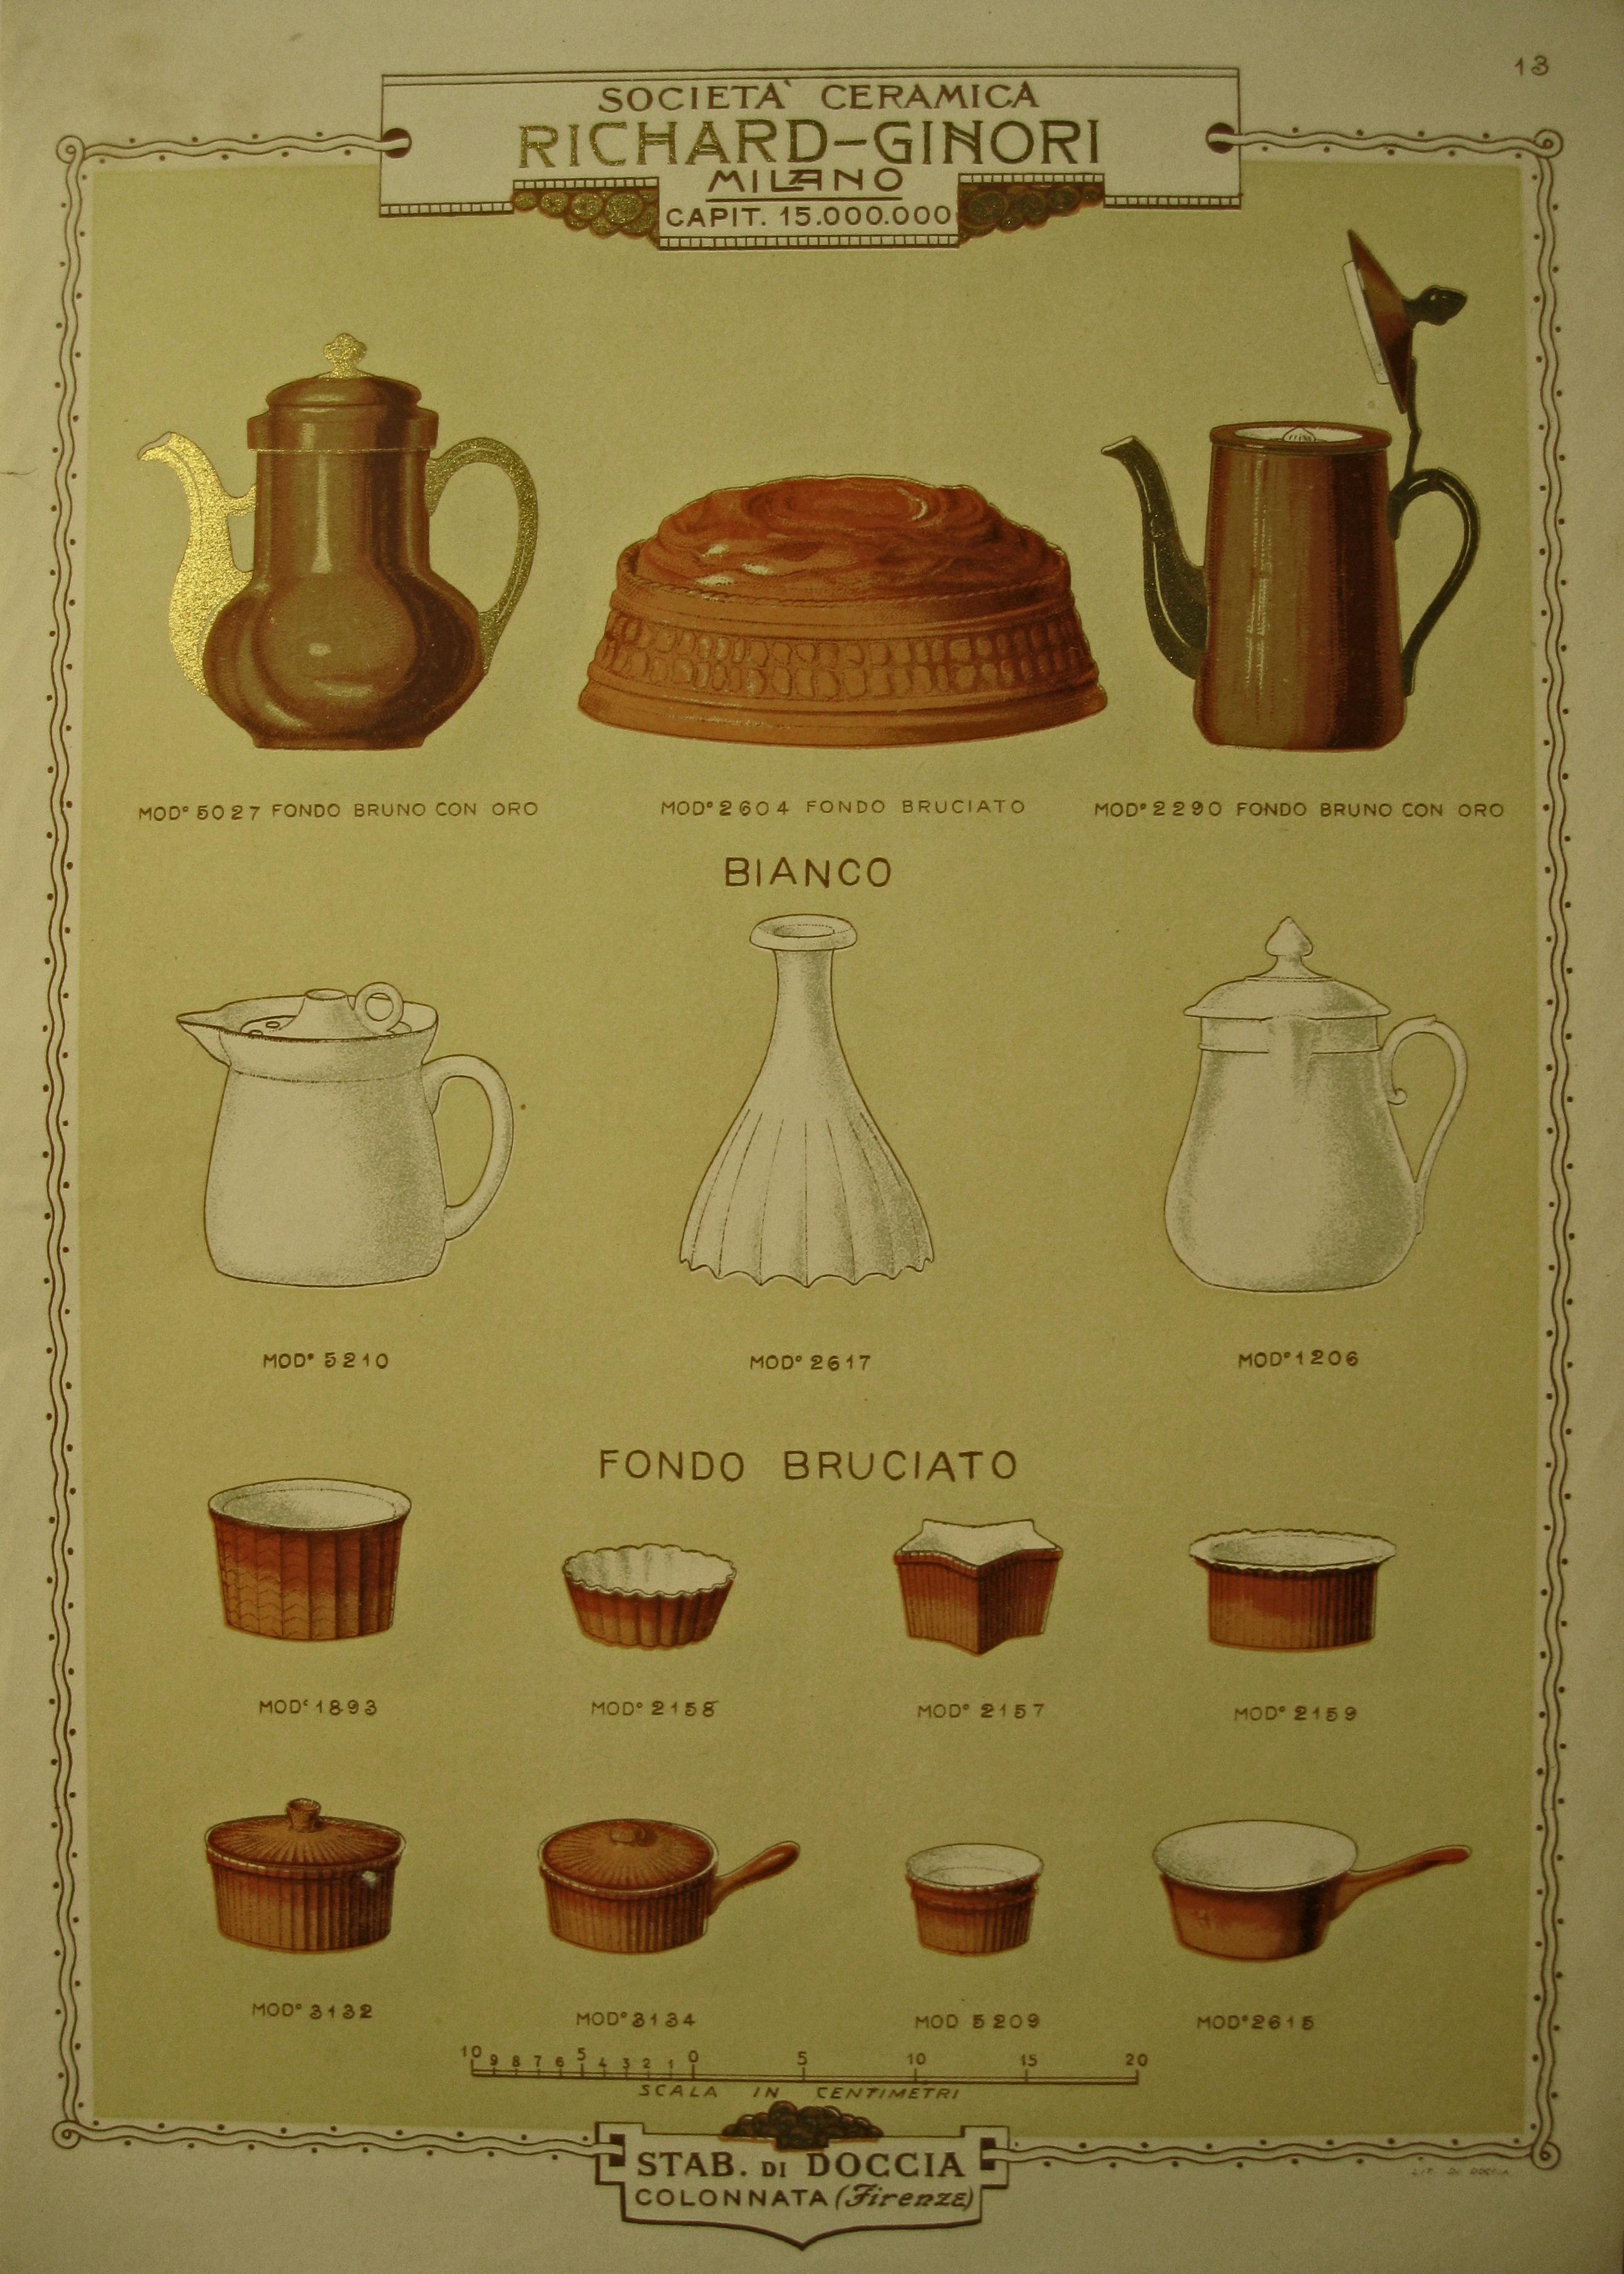 Tavola illustrata raffiugurante quattordici oggetti per la cottura dei cibi realizzati in porcellana pirofila. Gli oggetti sono di diverse forme e dimensioni.